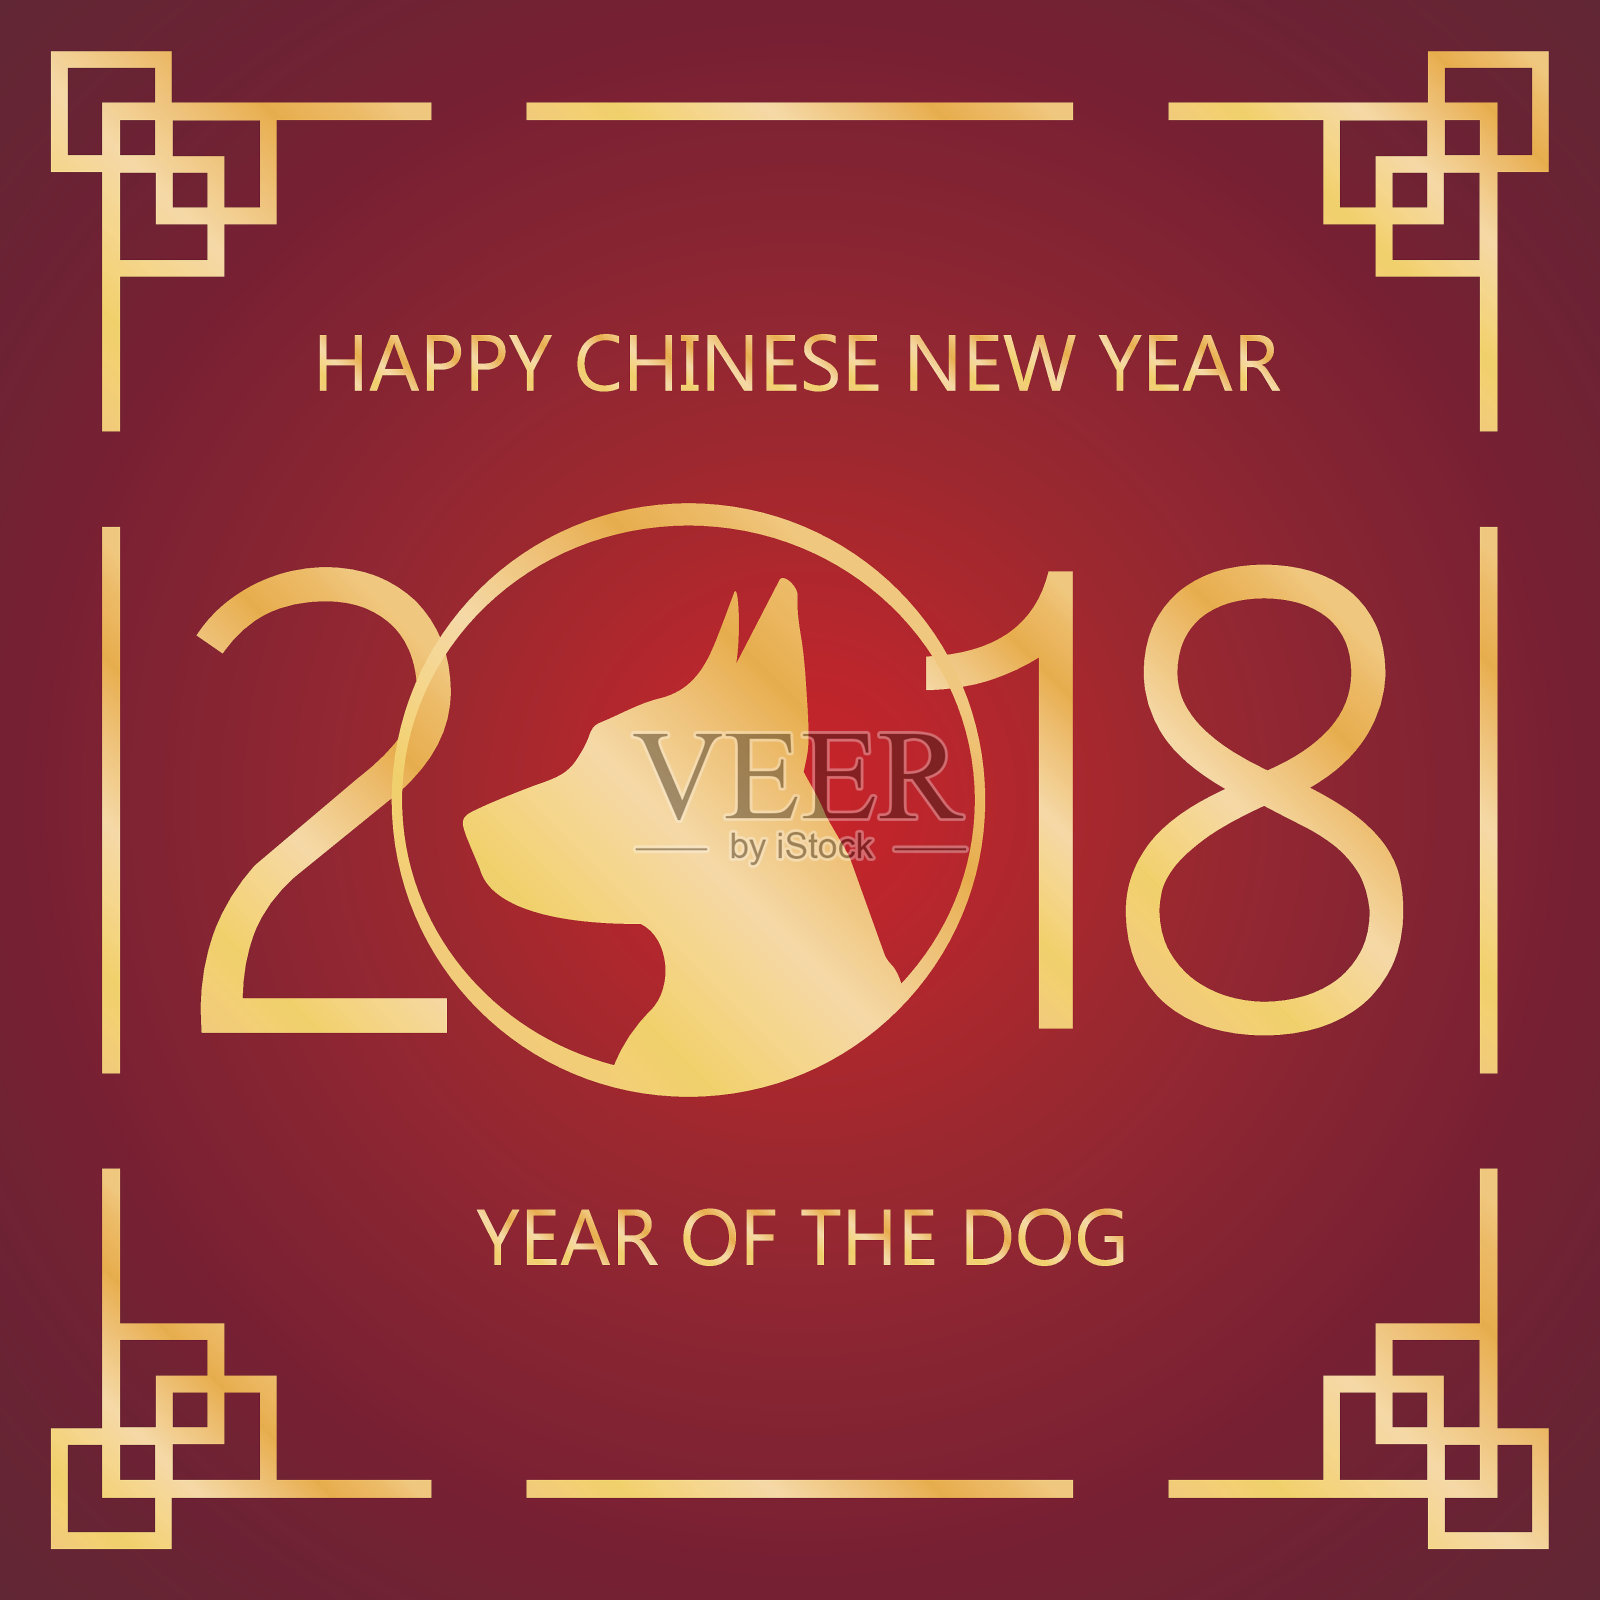 2018年中国新年矢量卡设计与狗，生肖象征2018年。中国新年快乐-黄金2018文字和狗。剪纸狗在框架矢量设计设计模板素材